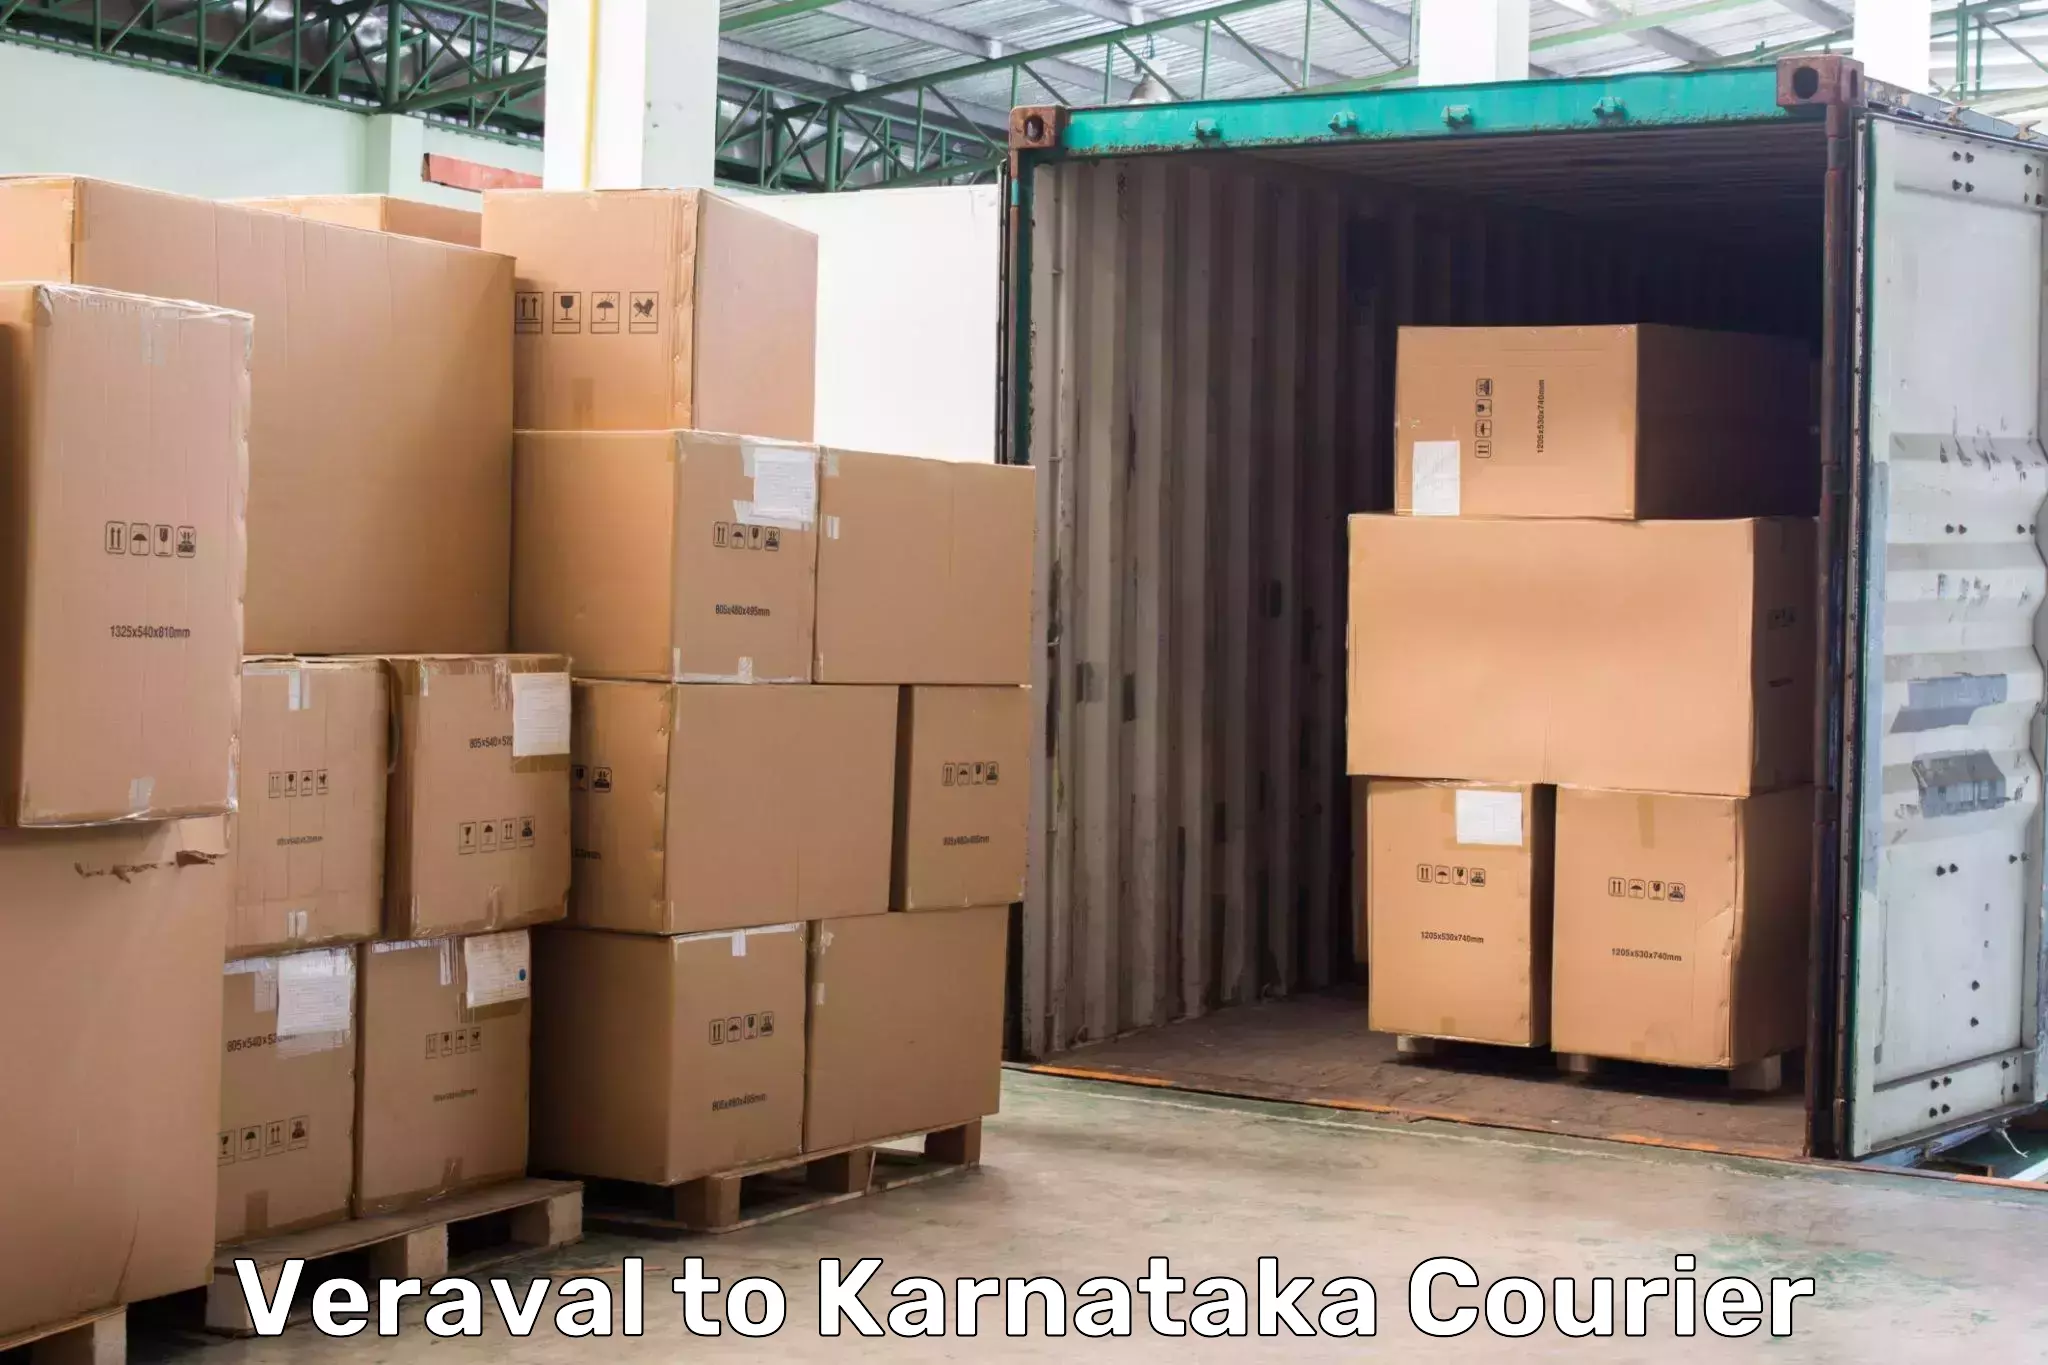 High-priority parcel service Veraval to Karnataka